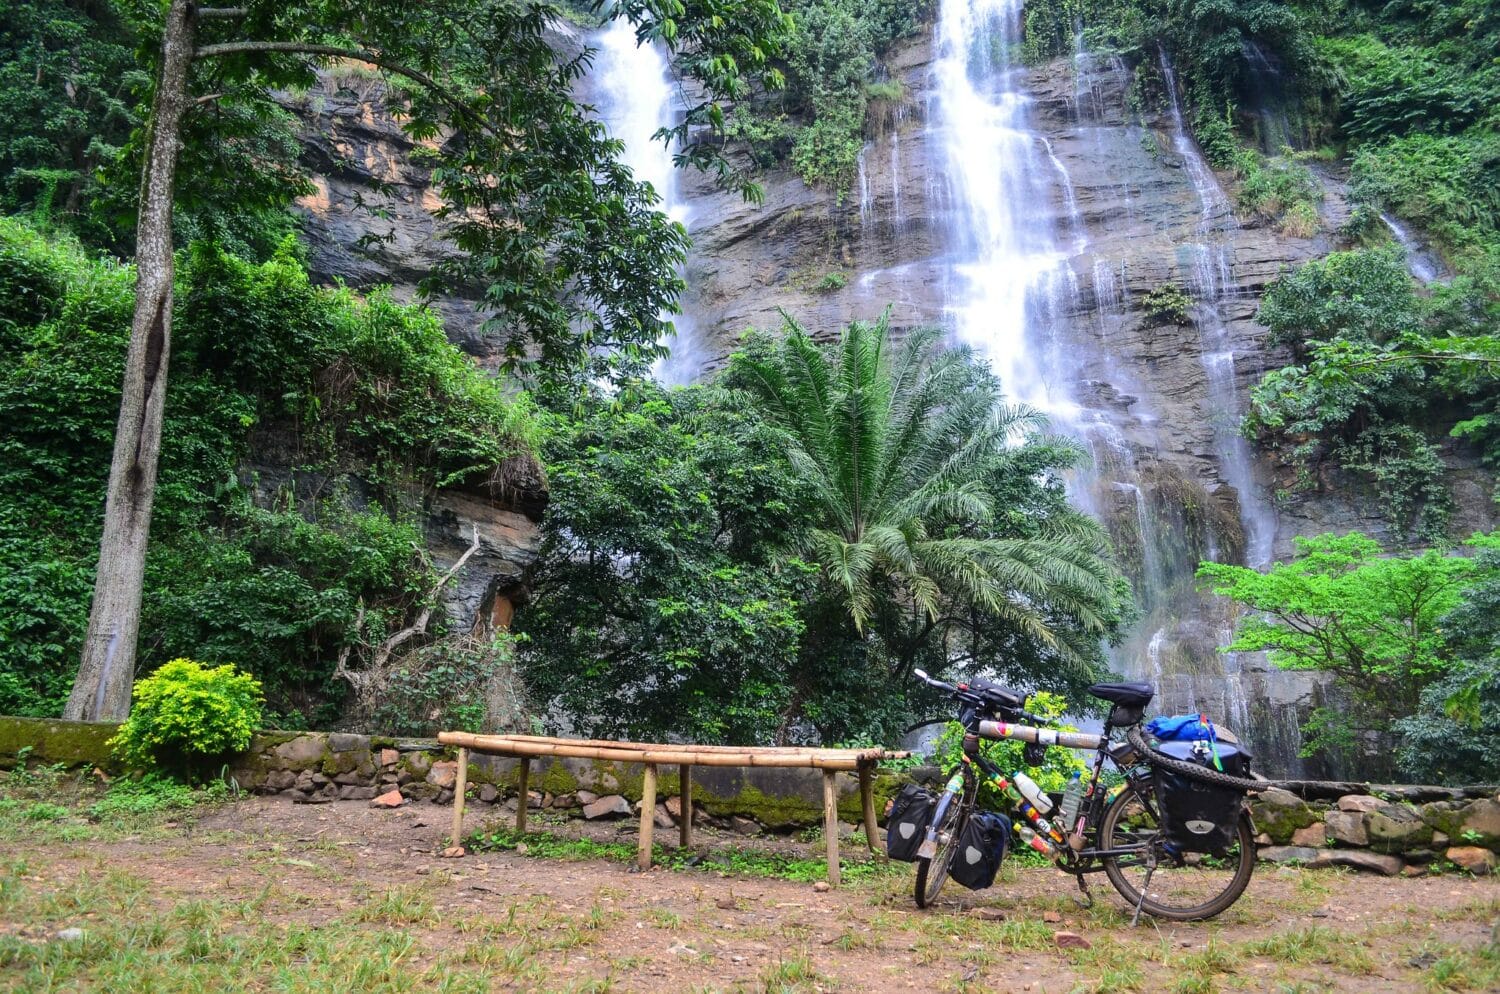 Cachoeira Kpime durante o dia com queda d'água ao fundo, no meio das rochas, em volta vegetação e na frente da cachoeira uma bicicleta parada no lado direito da imagem. Representa seguro viagem Togo.